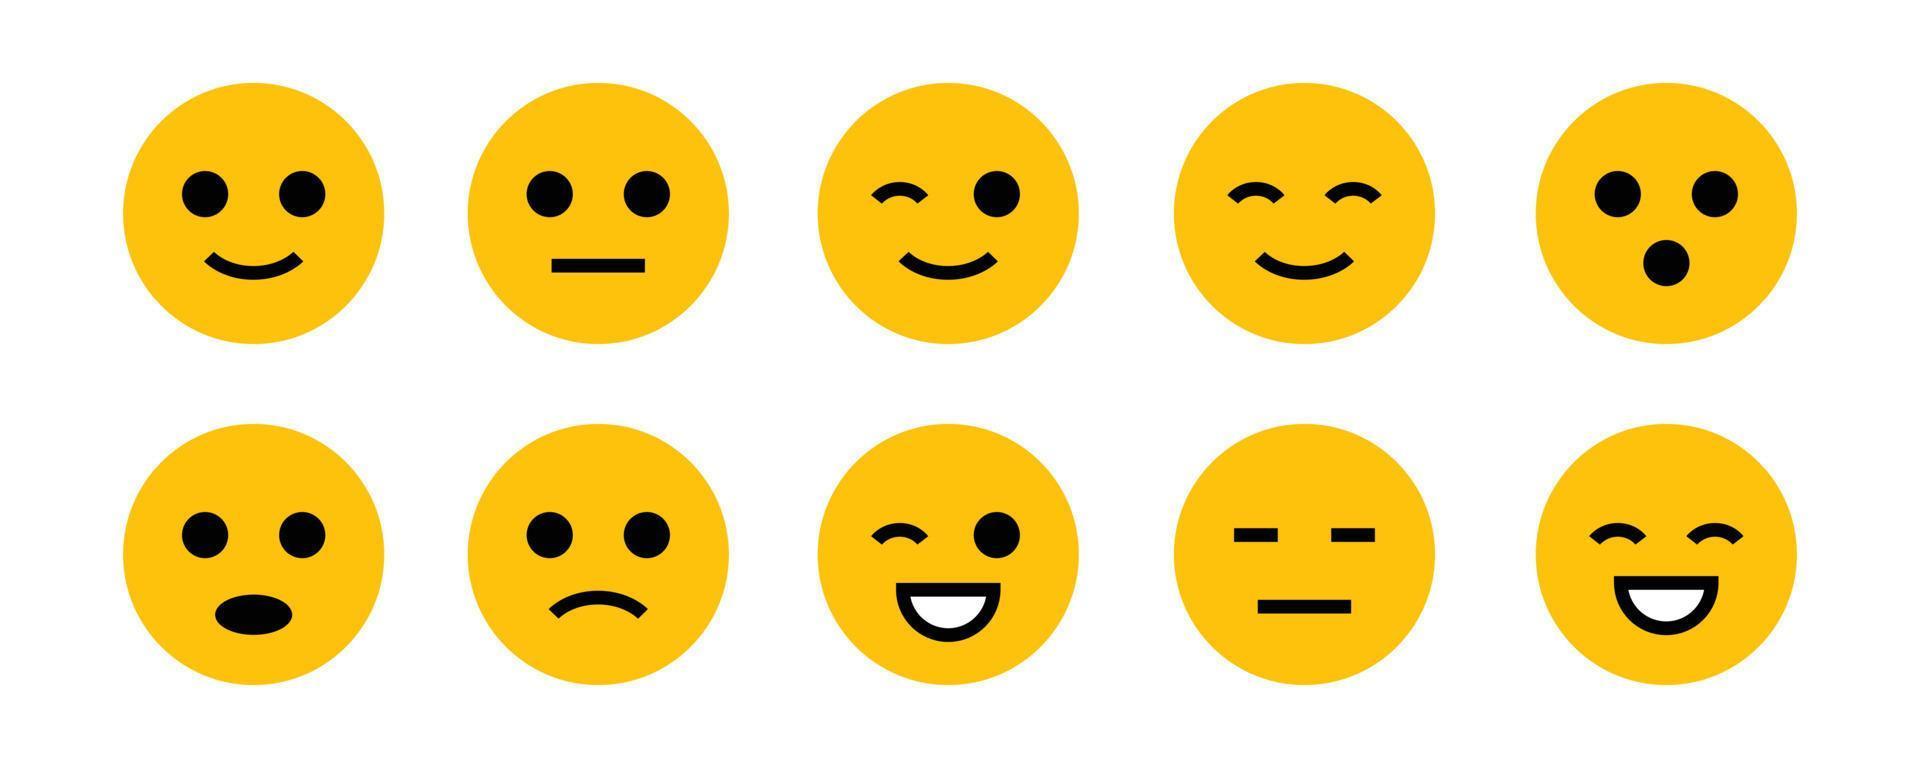 emojis amarelos para emoticon no chat vetor